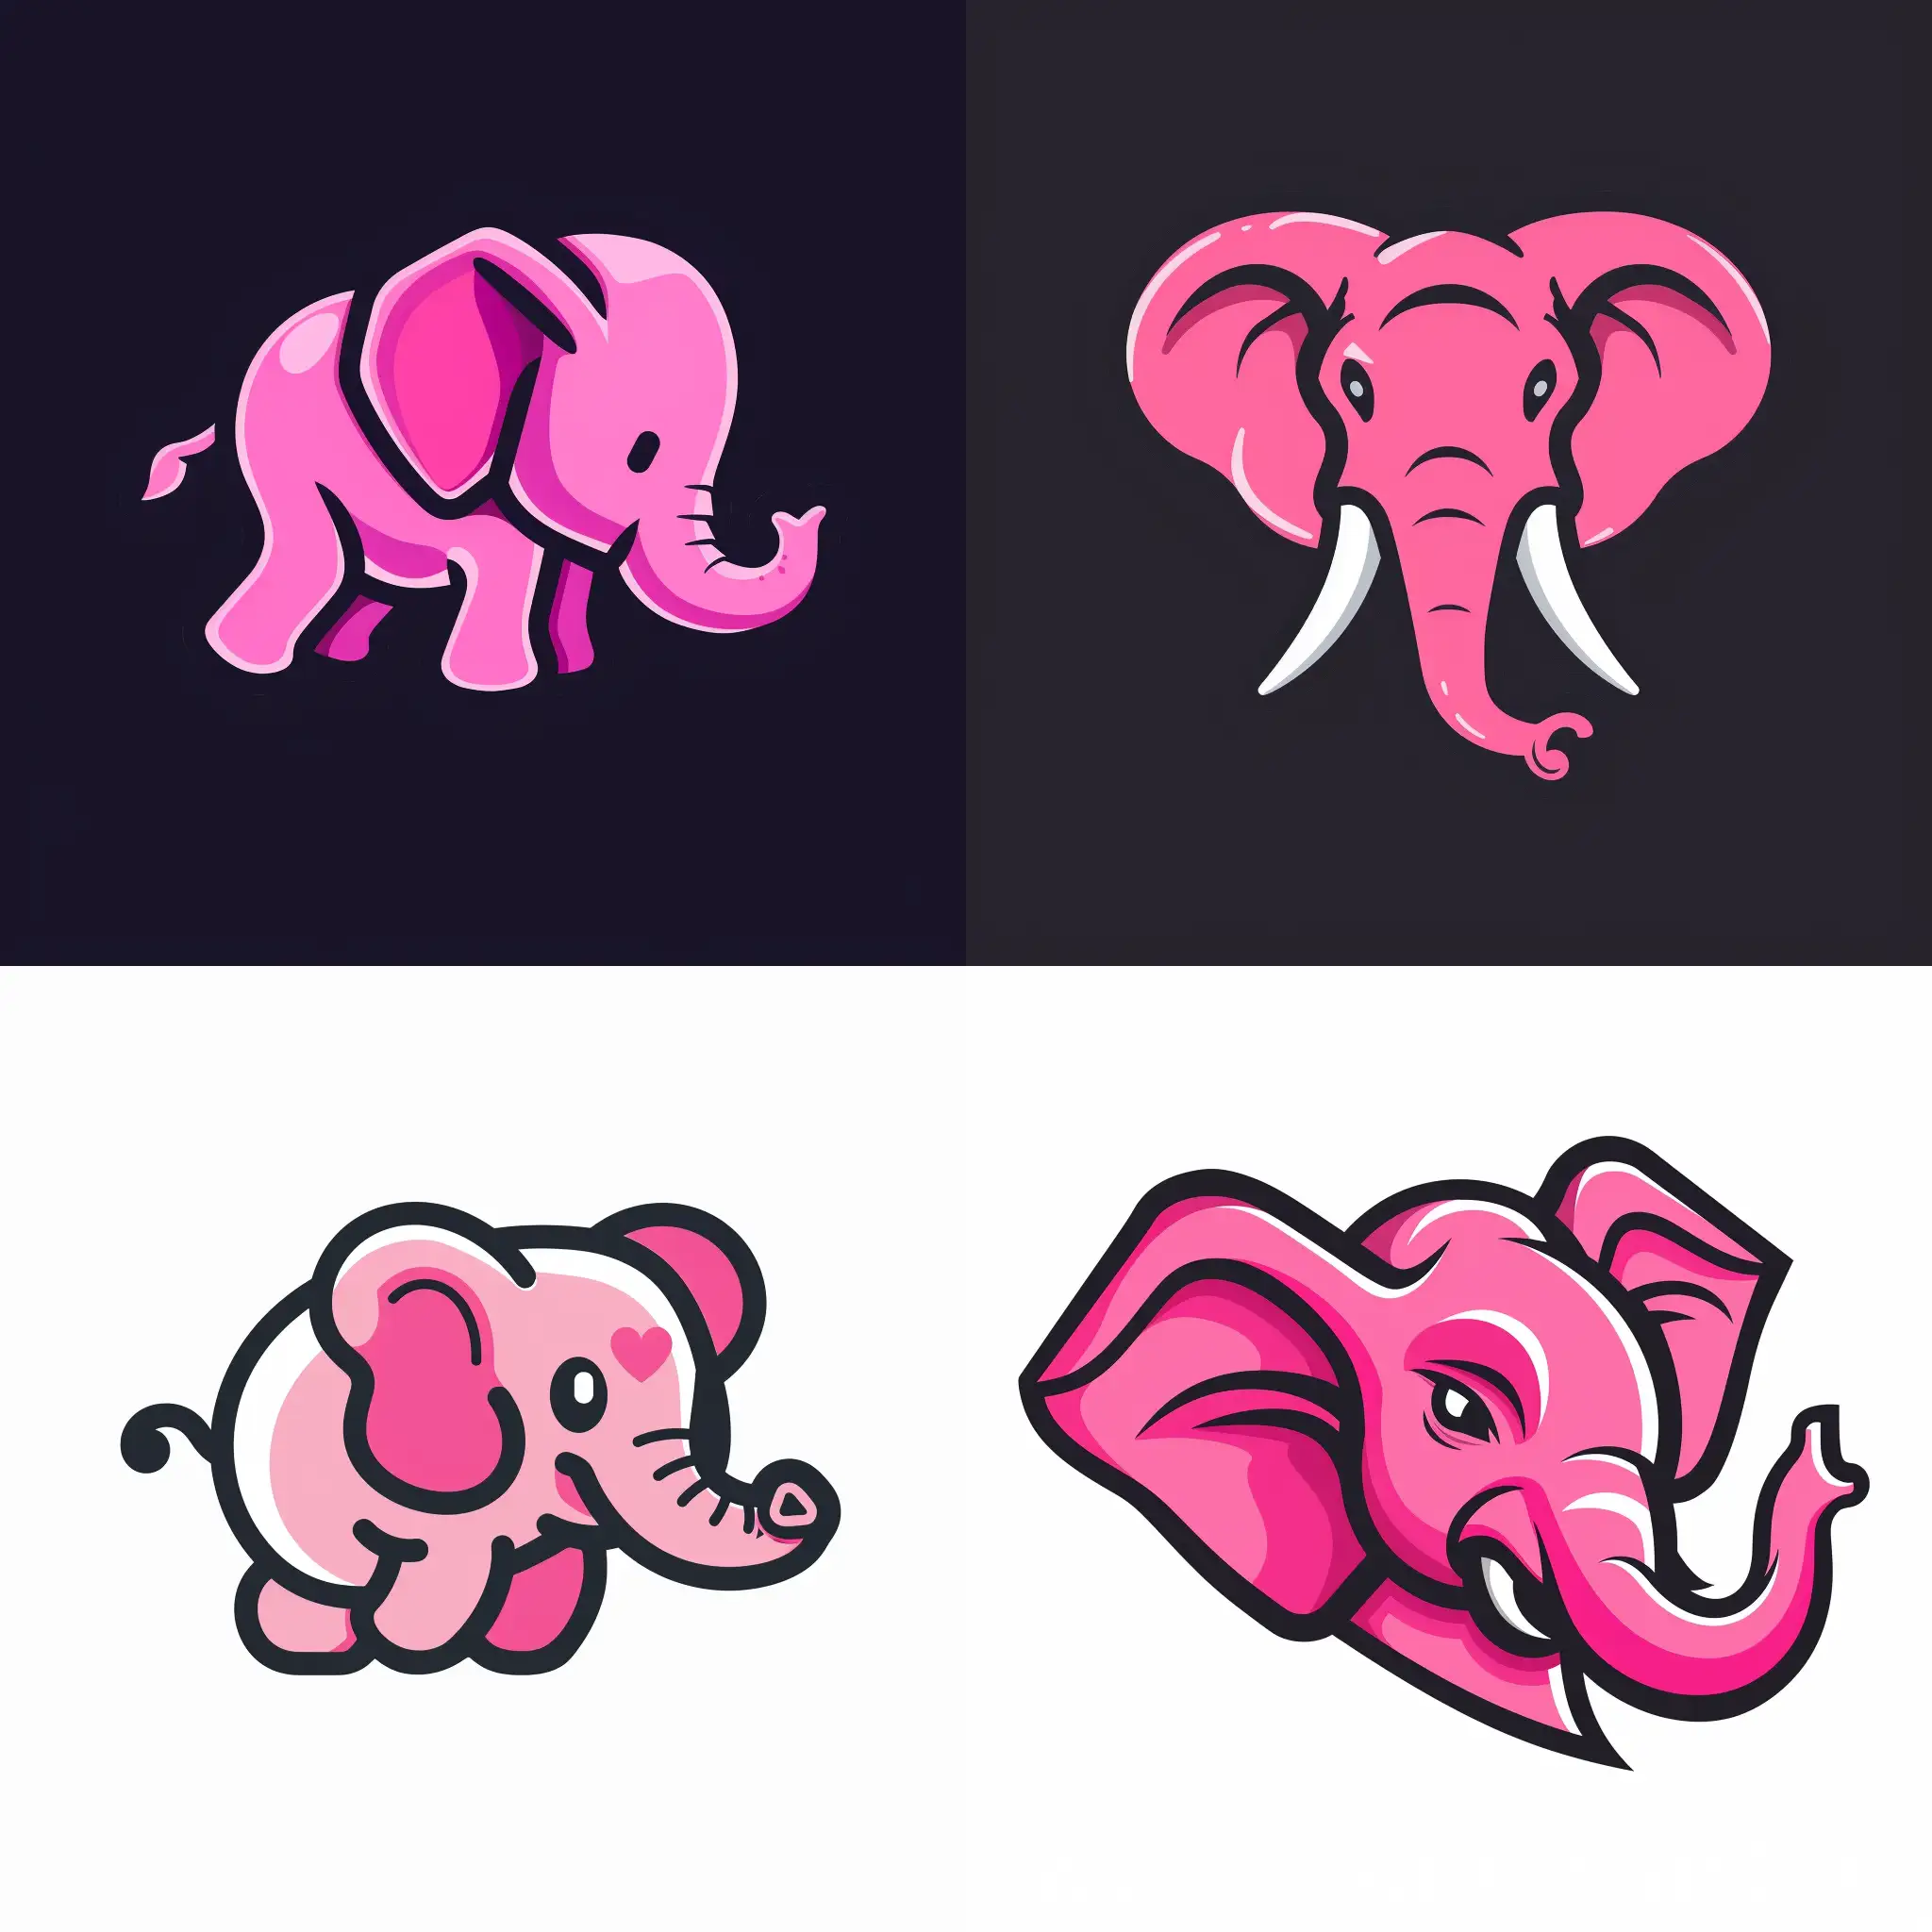 rużowy słoń taksuwka kret logo discord